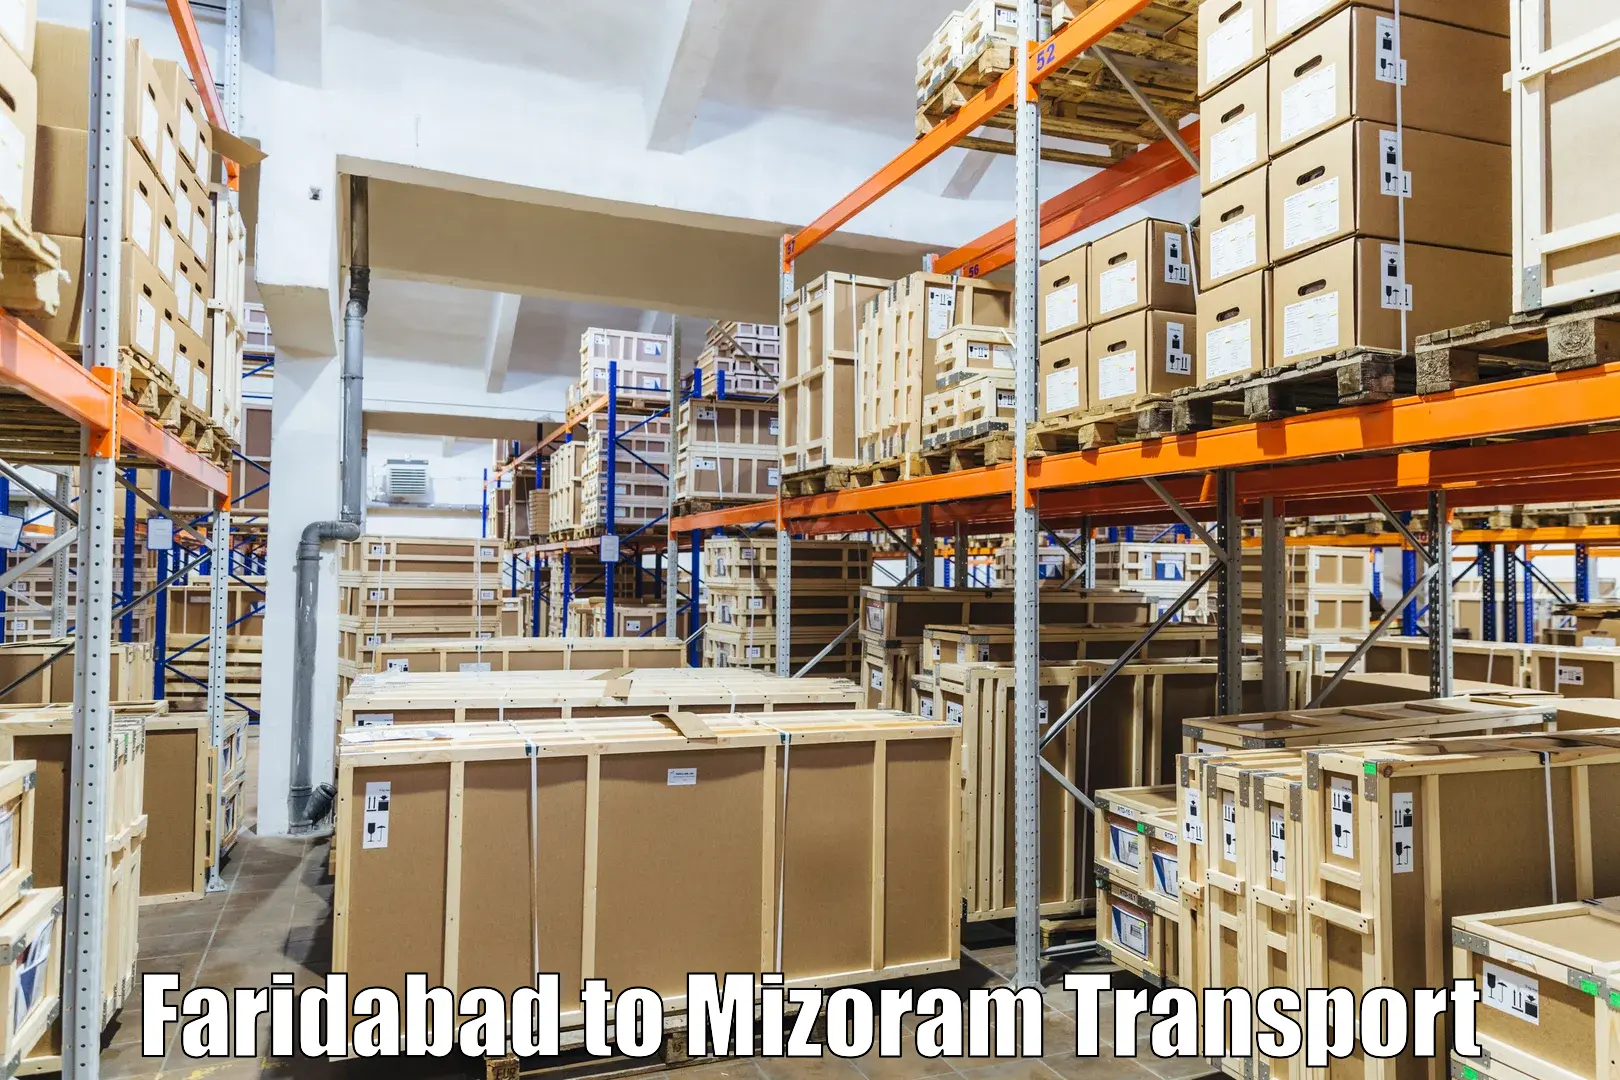 Shipping partner Faridabad to Mizoram